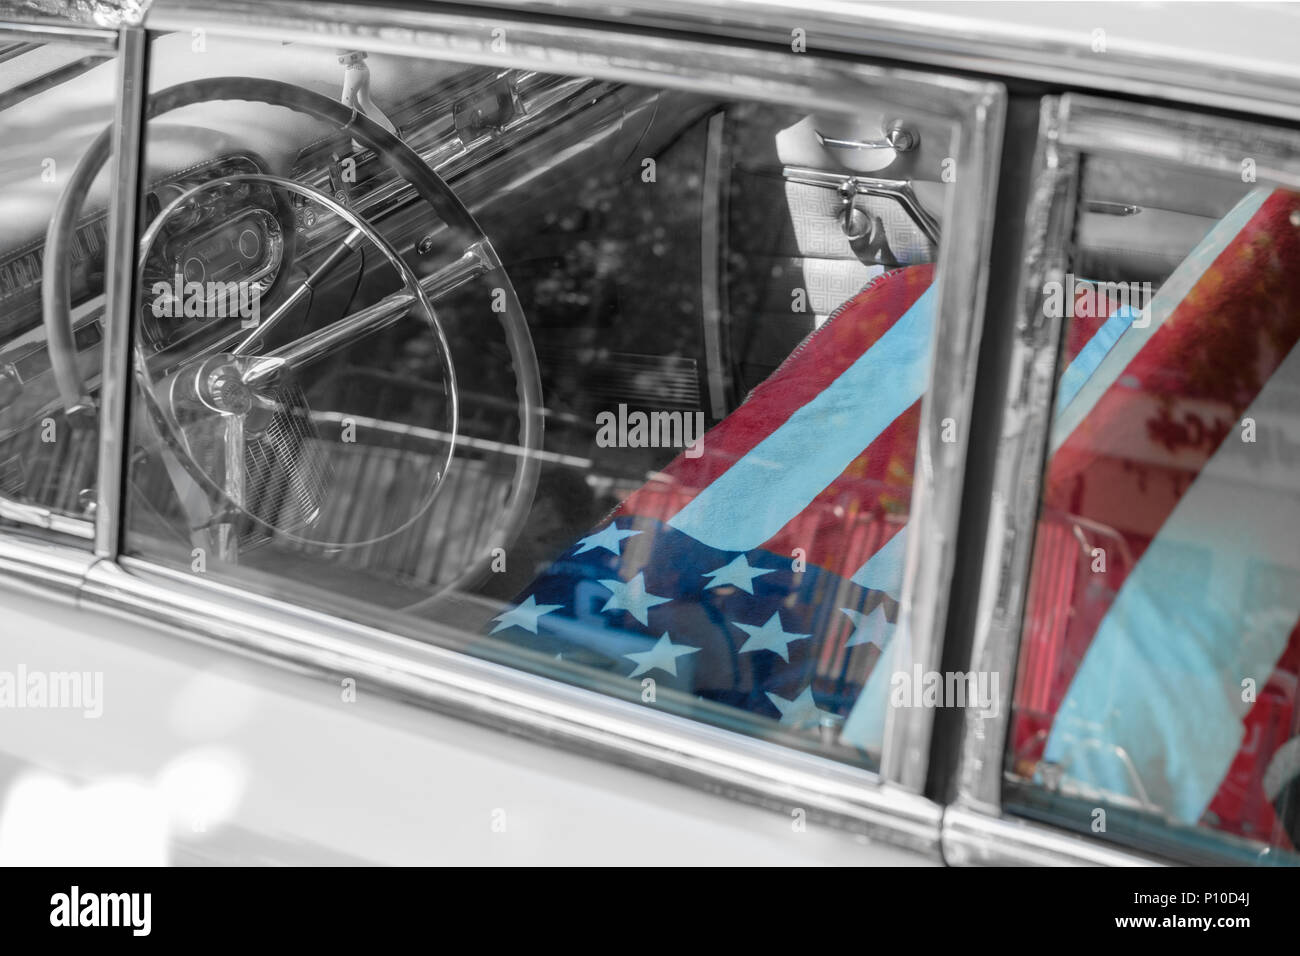 Berlin, Allemagne - 09 juin 2018 : Vieille voiture oldtimer Cadillac intérieur avec drapeau américain sur le siège avant en Oldtimer Classic Days, organisé à Berlin Banque D'Images